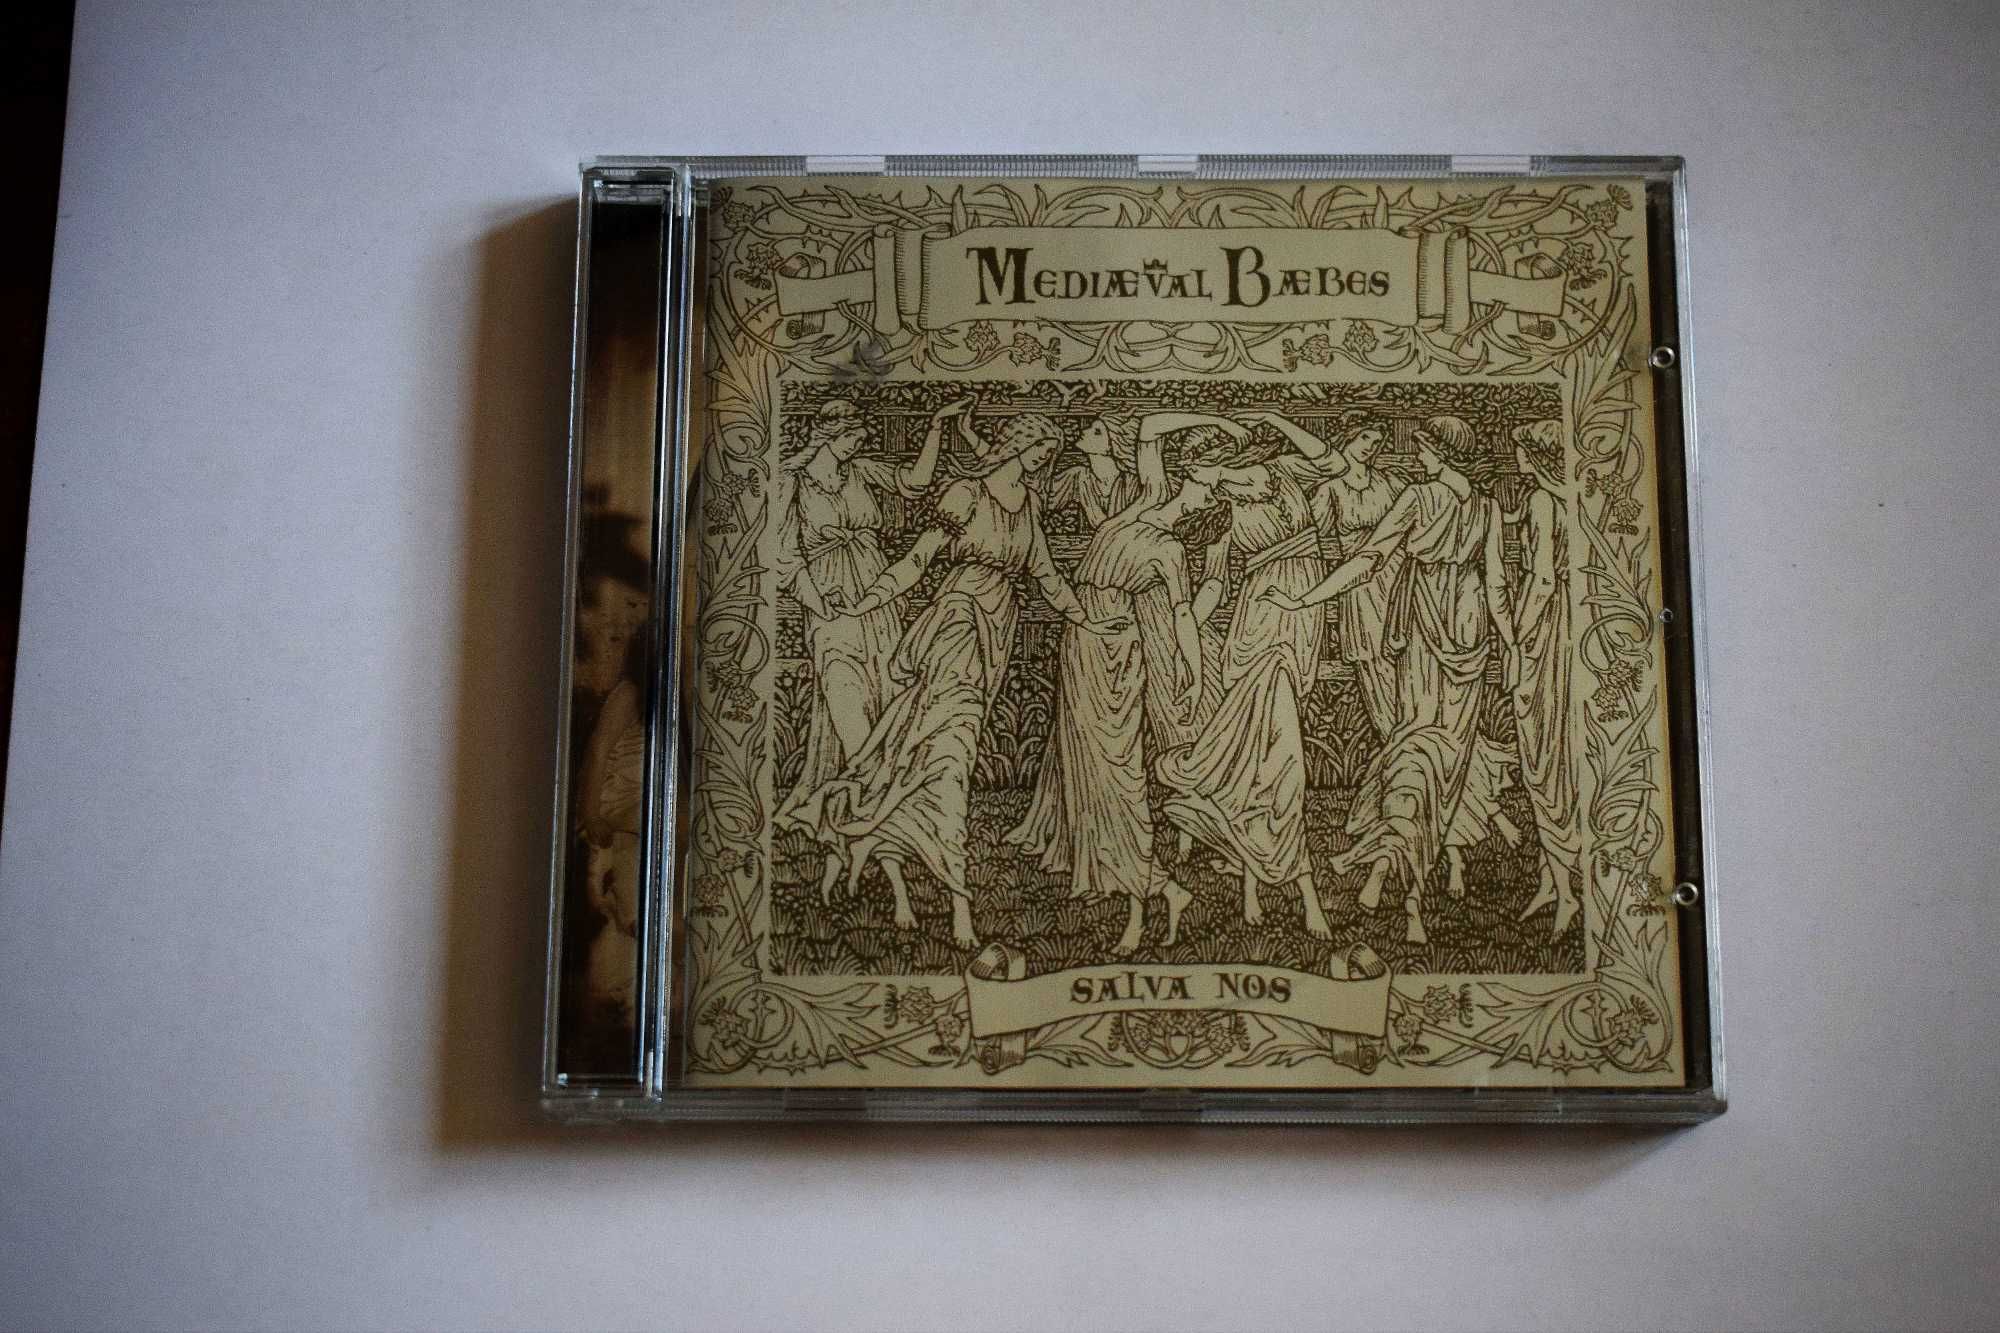 Mediaeval Baebes: Salva Nos, Virgin 1997 - CD jak nowa